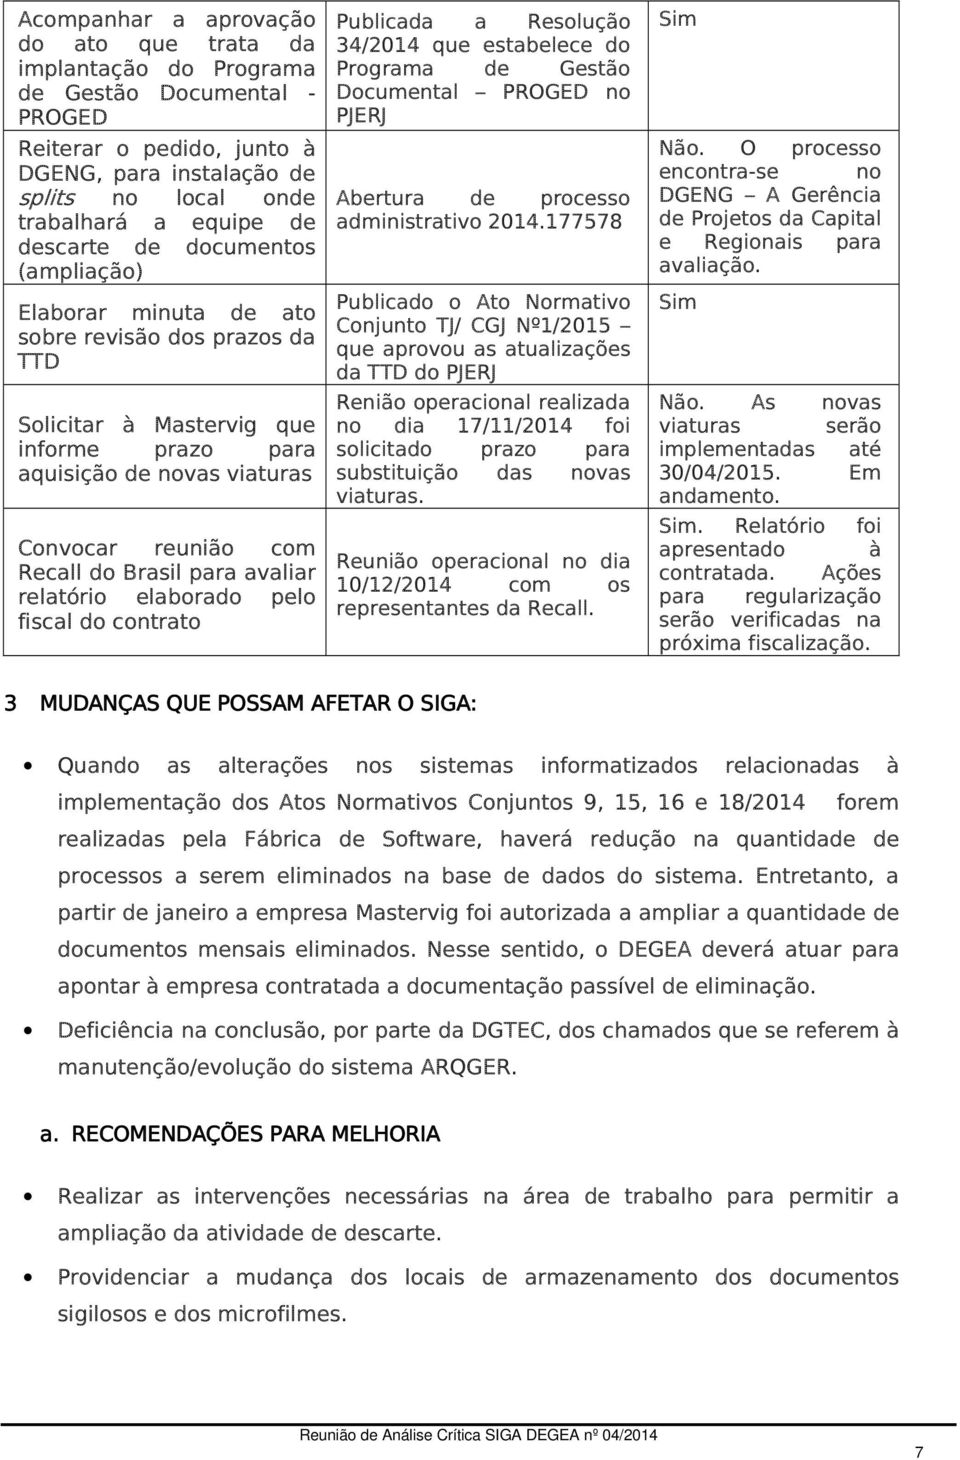 Brasil para avaliar relatório elaborado pelo fiscal do contrato Publicada a Resolução 34/2014 que estabelece do Programa de Gestão Documental PROGED no PJERJ Abertura de processo administrativo 2014.